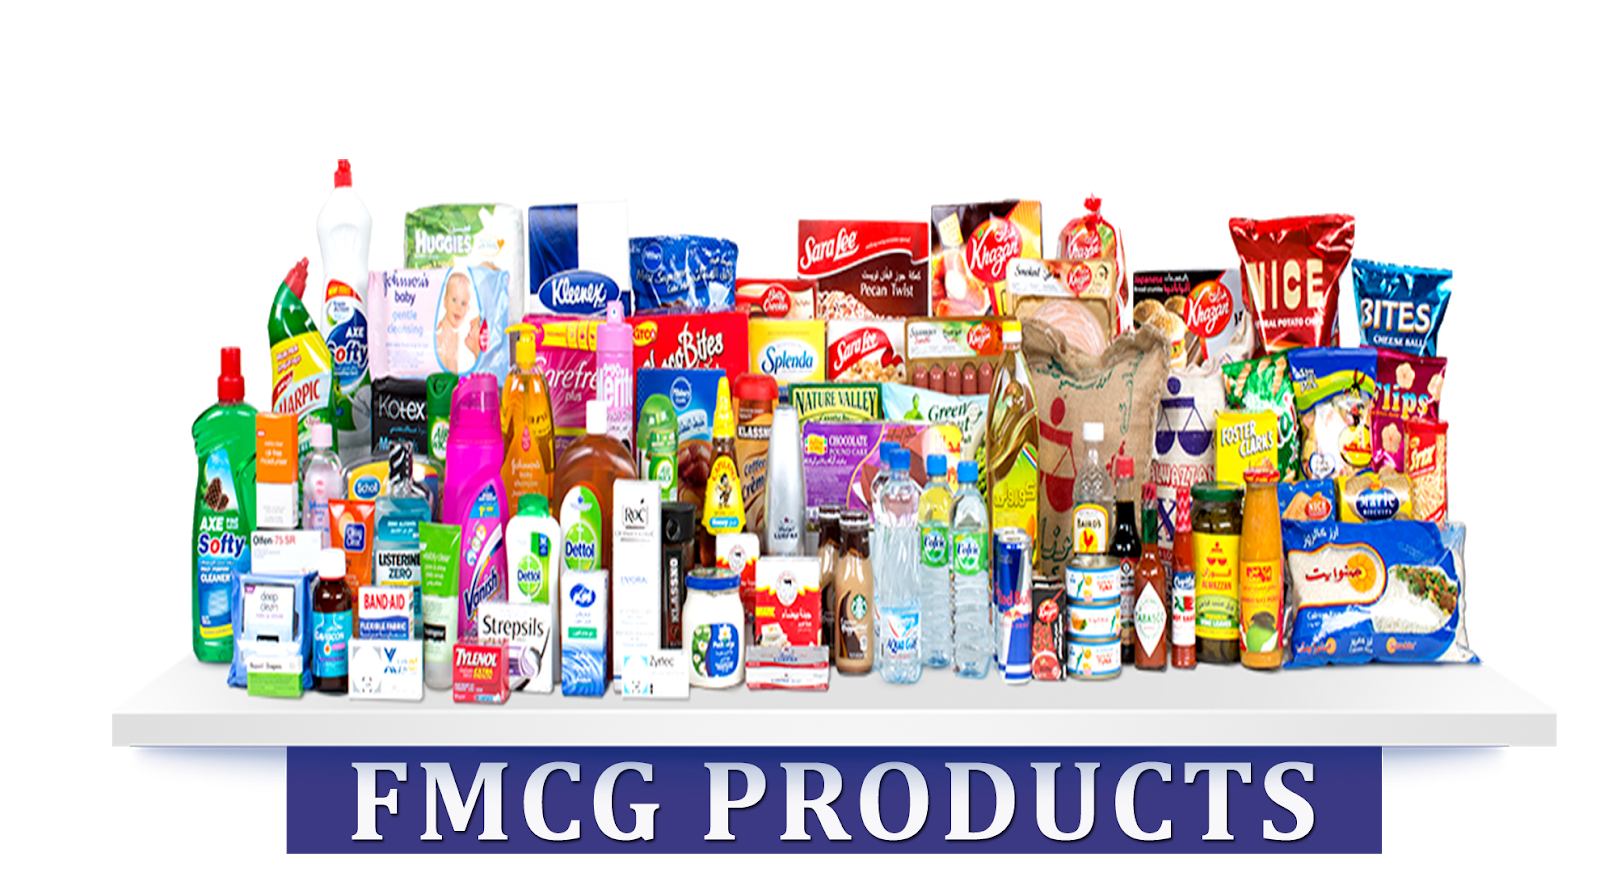 Best product company. FMCG товары. Продукция FMCG. FMCG продукты. Баннер для магазина бытовой химии.